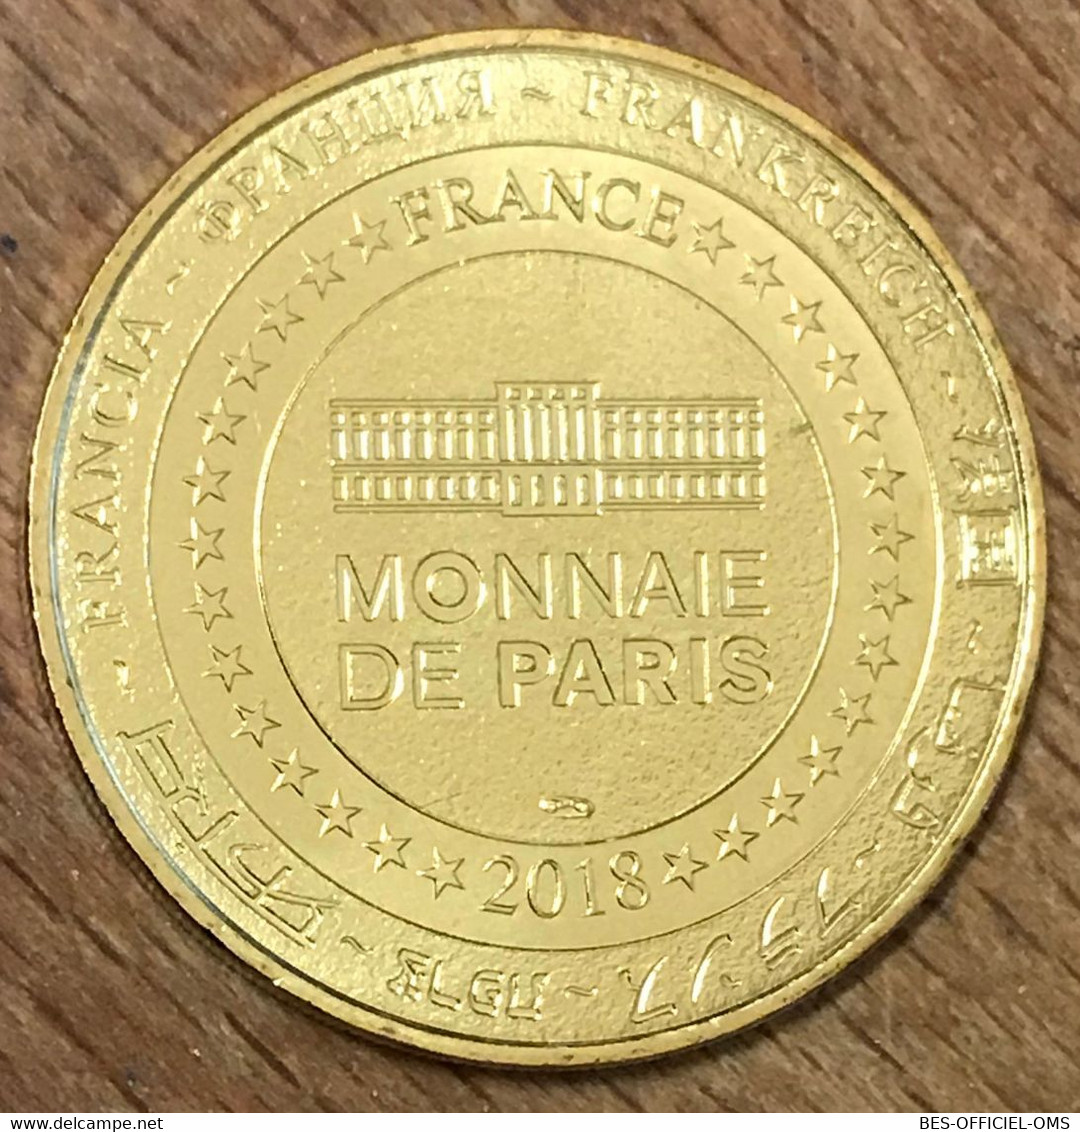 86 ROMAGNE VALLÉE DES SINGES GORILLE MDP 2018 MÉDAILLE MONNAIE DE PARIS JETON TOURISTIQUE MEDALS COINS TOKENS - 2018